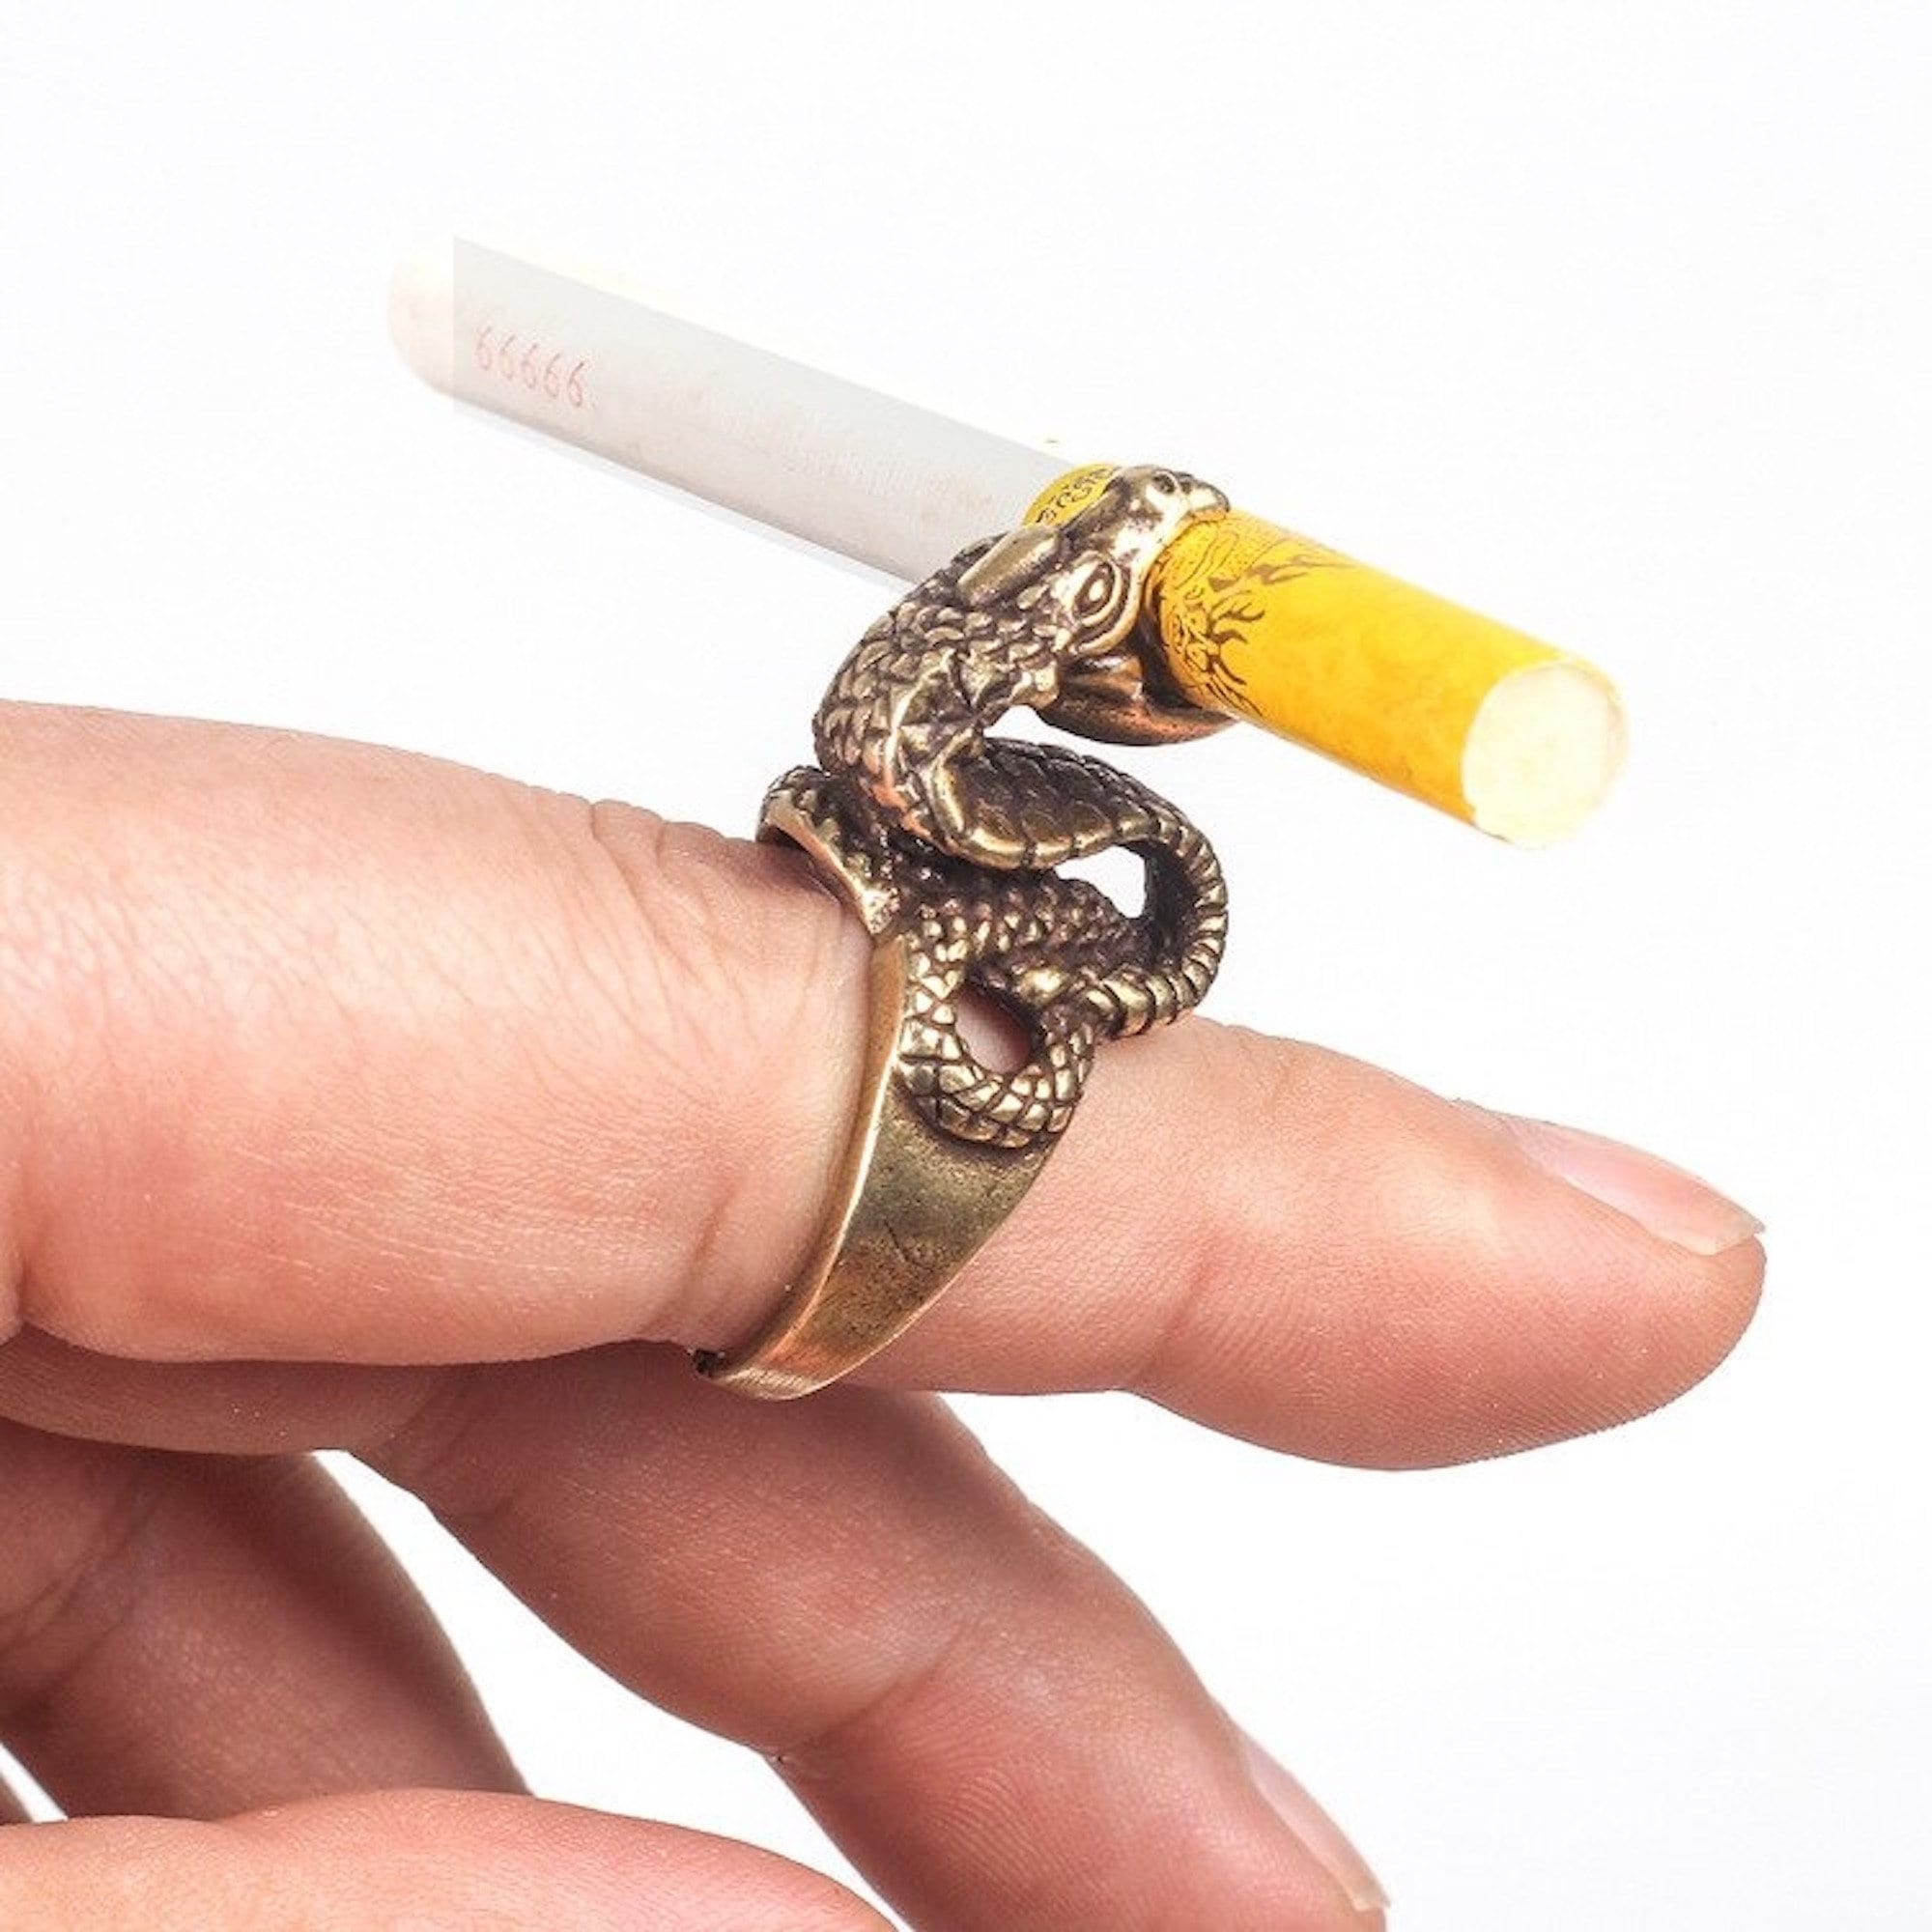 Cigarette Holder Ring Blunt Holder Ring Smoke Holder Joint Cigarette Clip  Finger Ring for Women and Men 2 Pack : Amazon.in: Jewellery